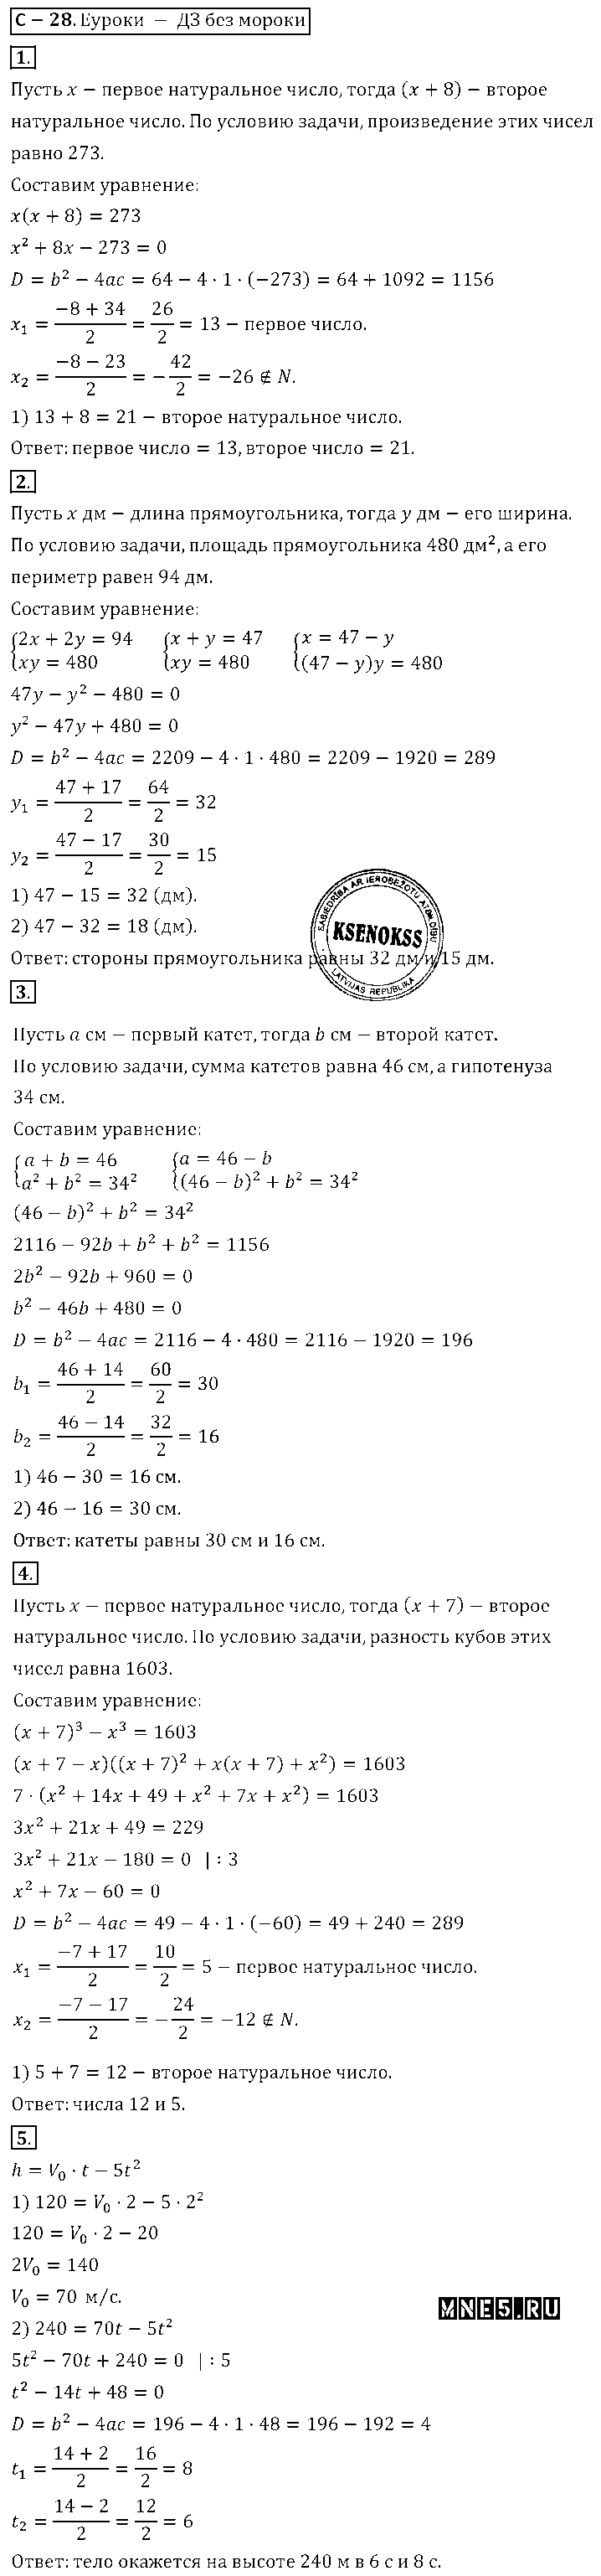 ГДЗ Алгебра 8 класс - С-27(28). Решение задач с помощью квадратных уравнений